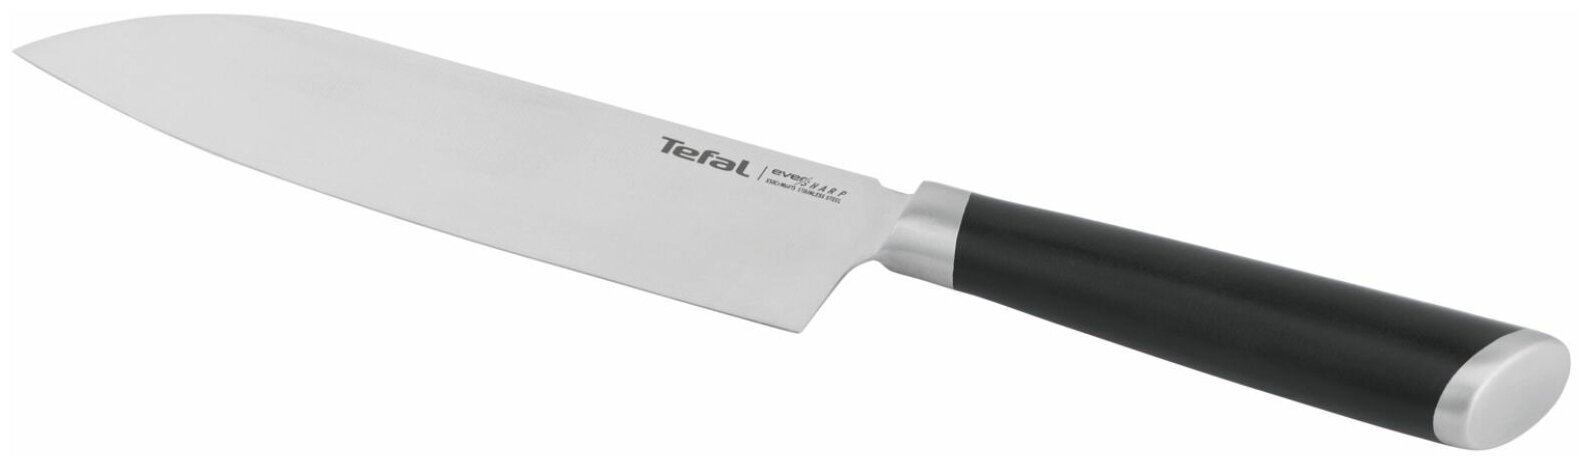 Нож сантоку Tefal Ever Sharp K2579024, длина лезвия 16.5 см, немецкая нержавеющая сталь, чехол в комплекте - фотография № 20